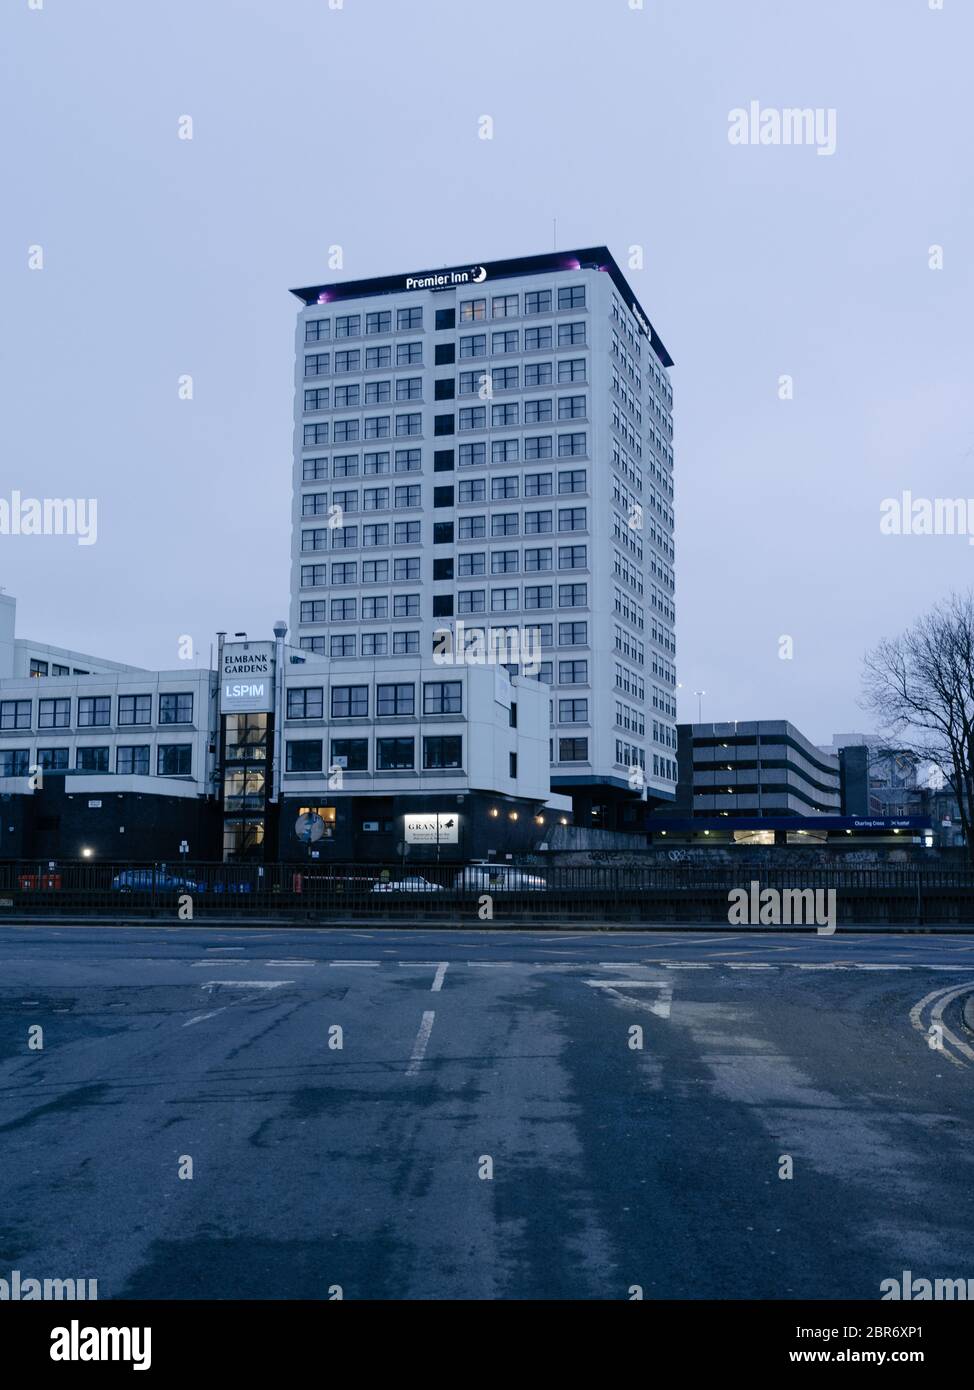 L'hotel Premier Inn a Charing Cross nel centro di Glasgow, chiuso durante la pandemia e il blocco globale del Covid 19. Foto Stock